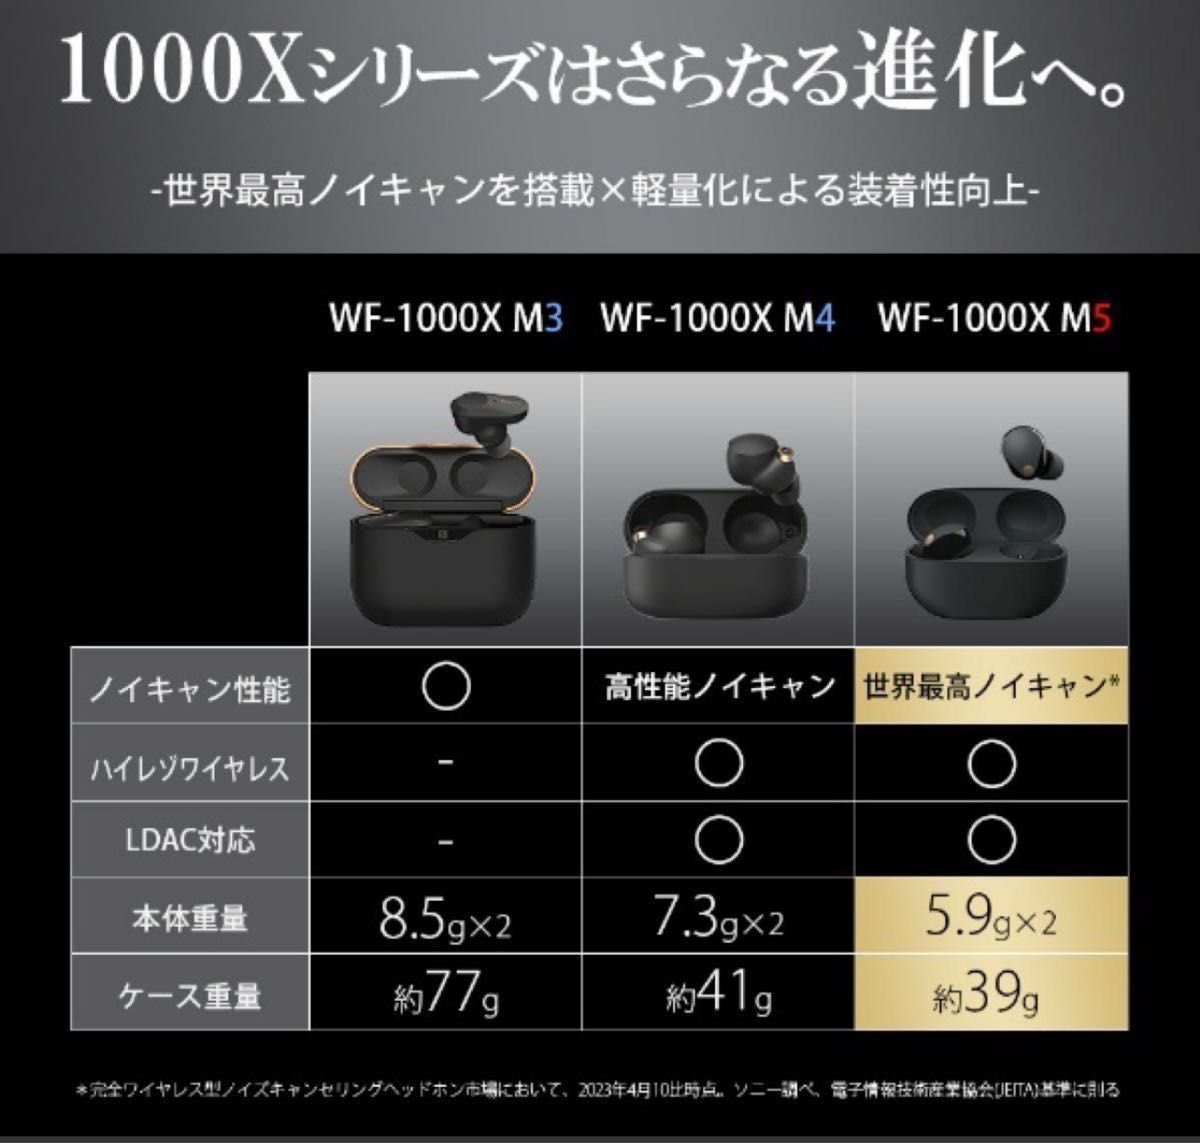 【新品・未開封】SONY ソニー フルワイヤレスイヤホン WF-1000XM5 ブラック